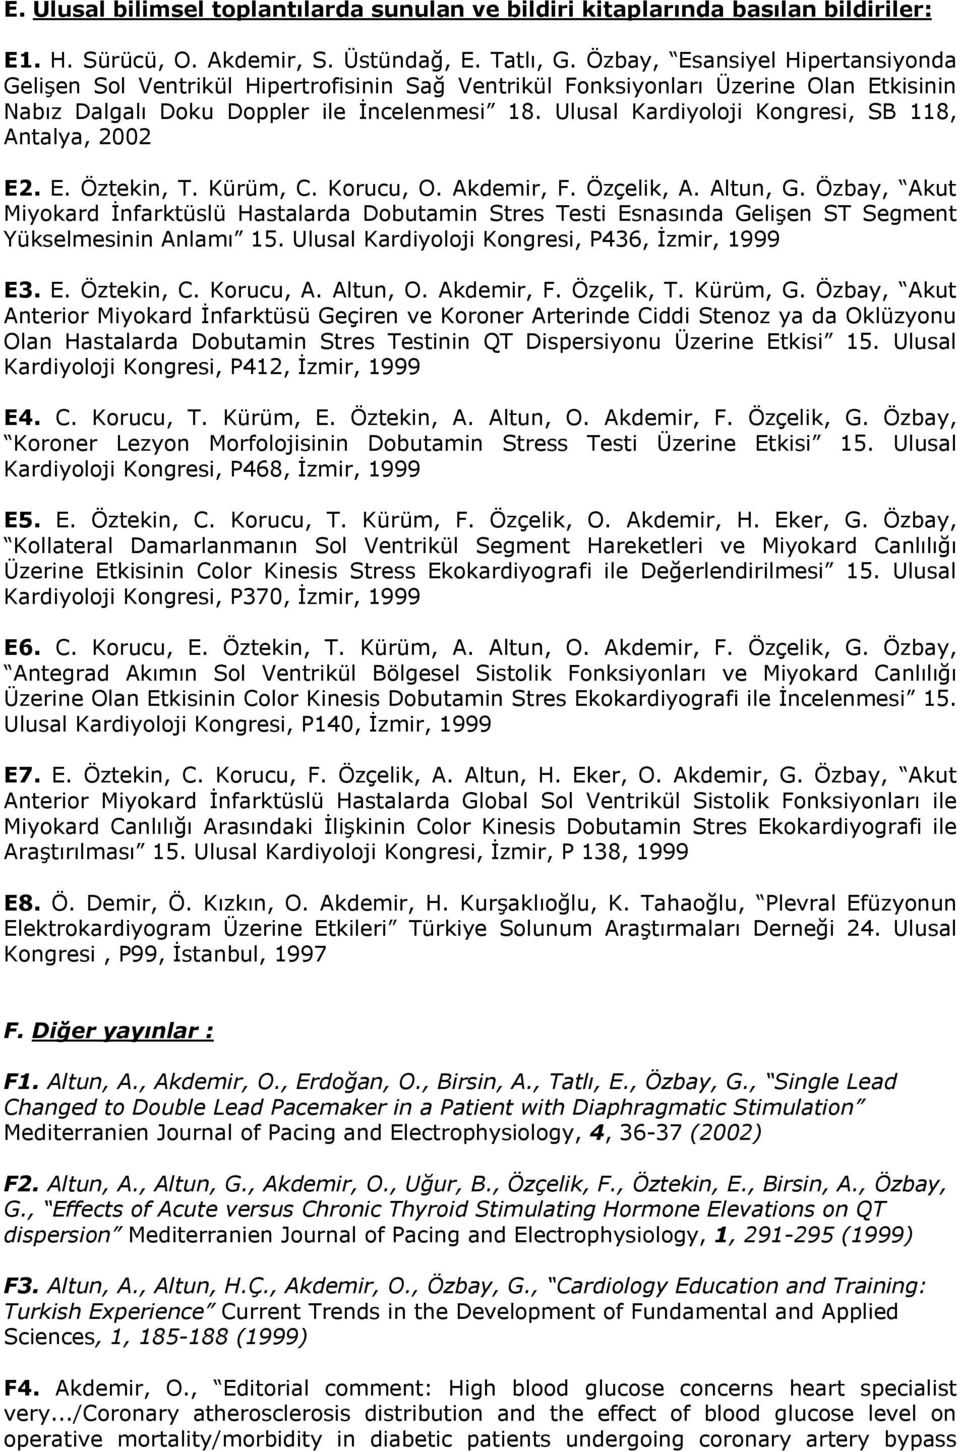 Ulusal Kardiyoloji Kongresi, SB 118, Antalya, 2002 E2. E. Öztekin, T. Kürüm, C. Korucu, O. Akdemir, F. Özçelik, A. Altun, G.